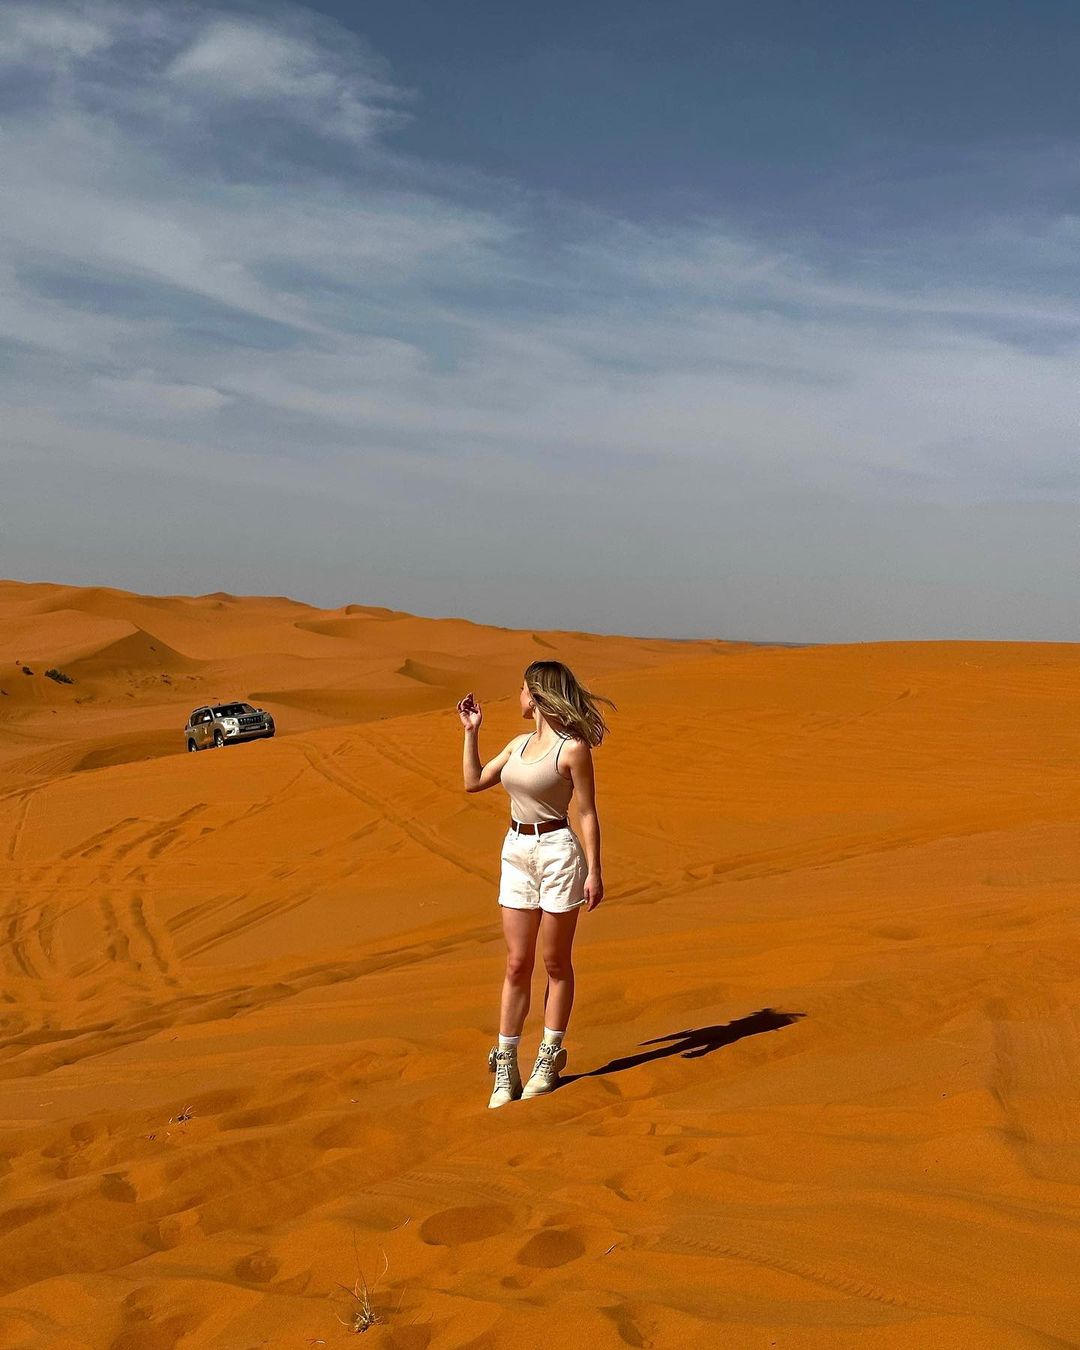 Сидни Суини в обтягивающей майке в пустыне на новых фото